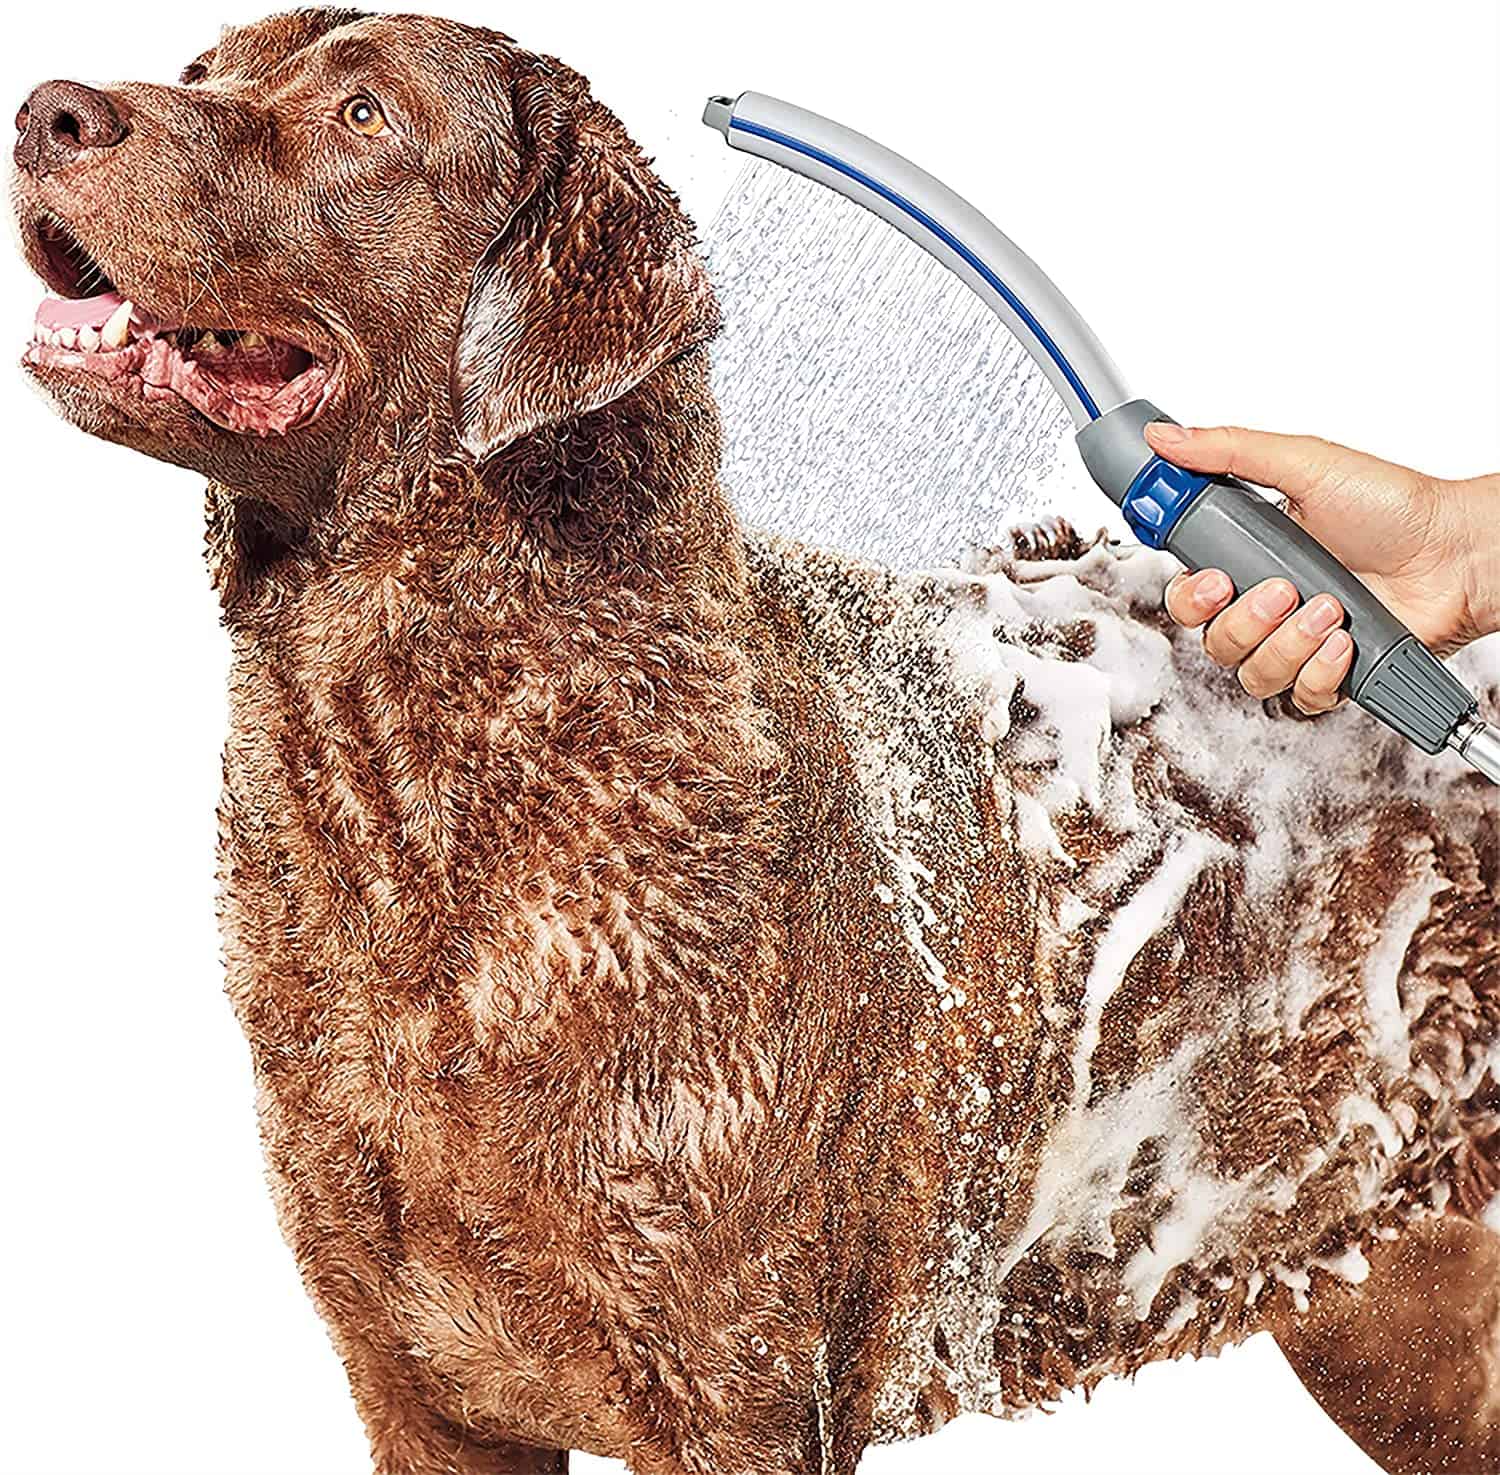 1. Waterpik Pet Wand Pro Dog Shower Attachment